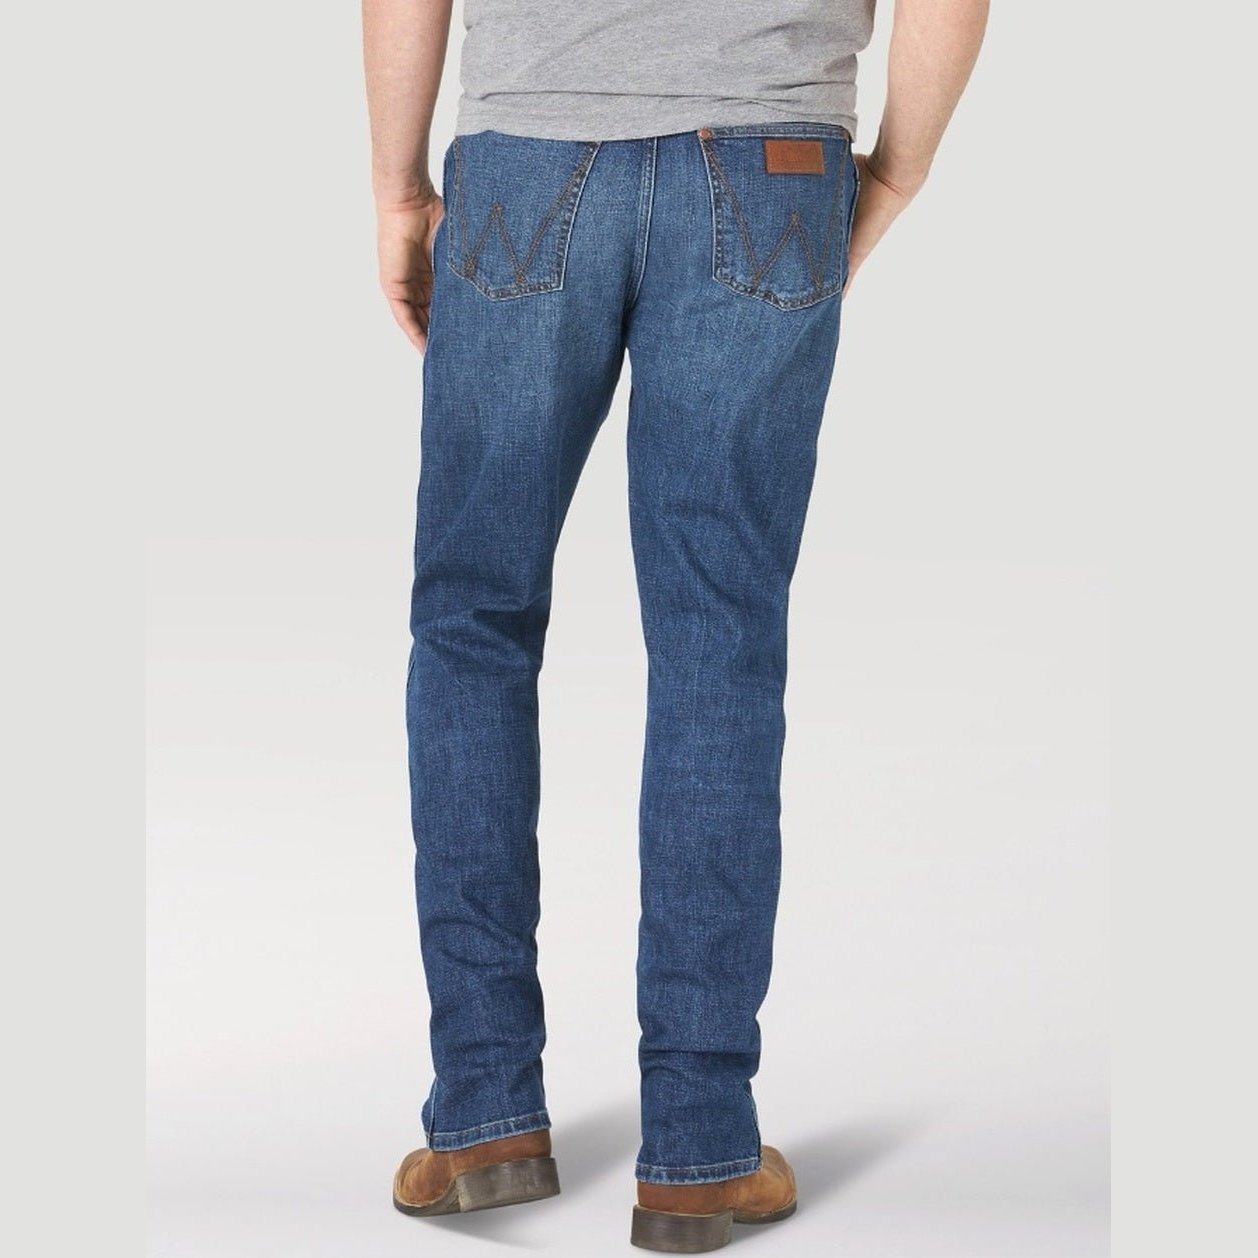 Wrangler Men’s Jeans Retro Slim Straight 88MWPPT - Wrangler